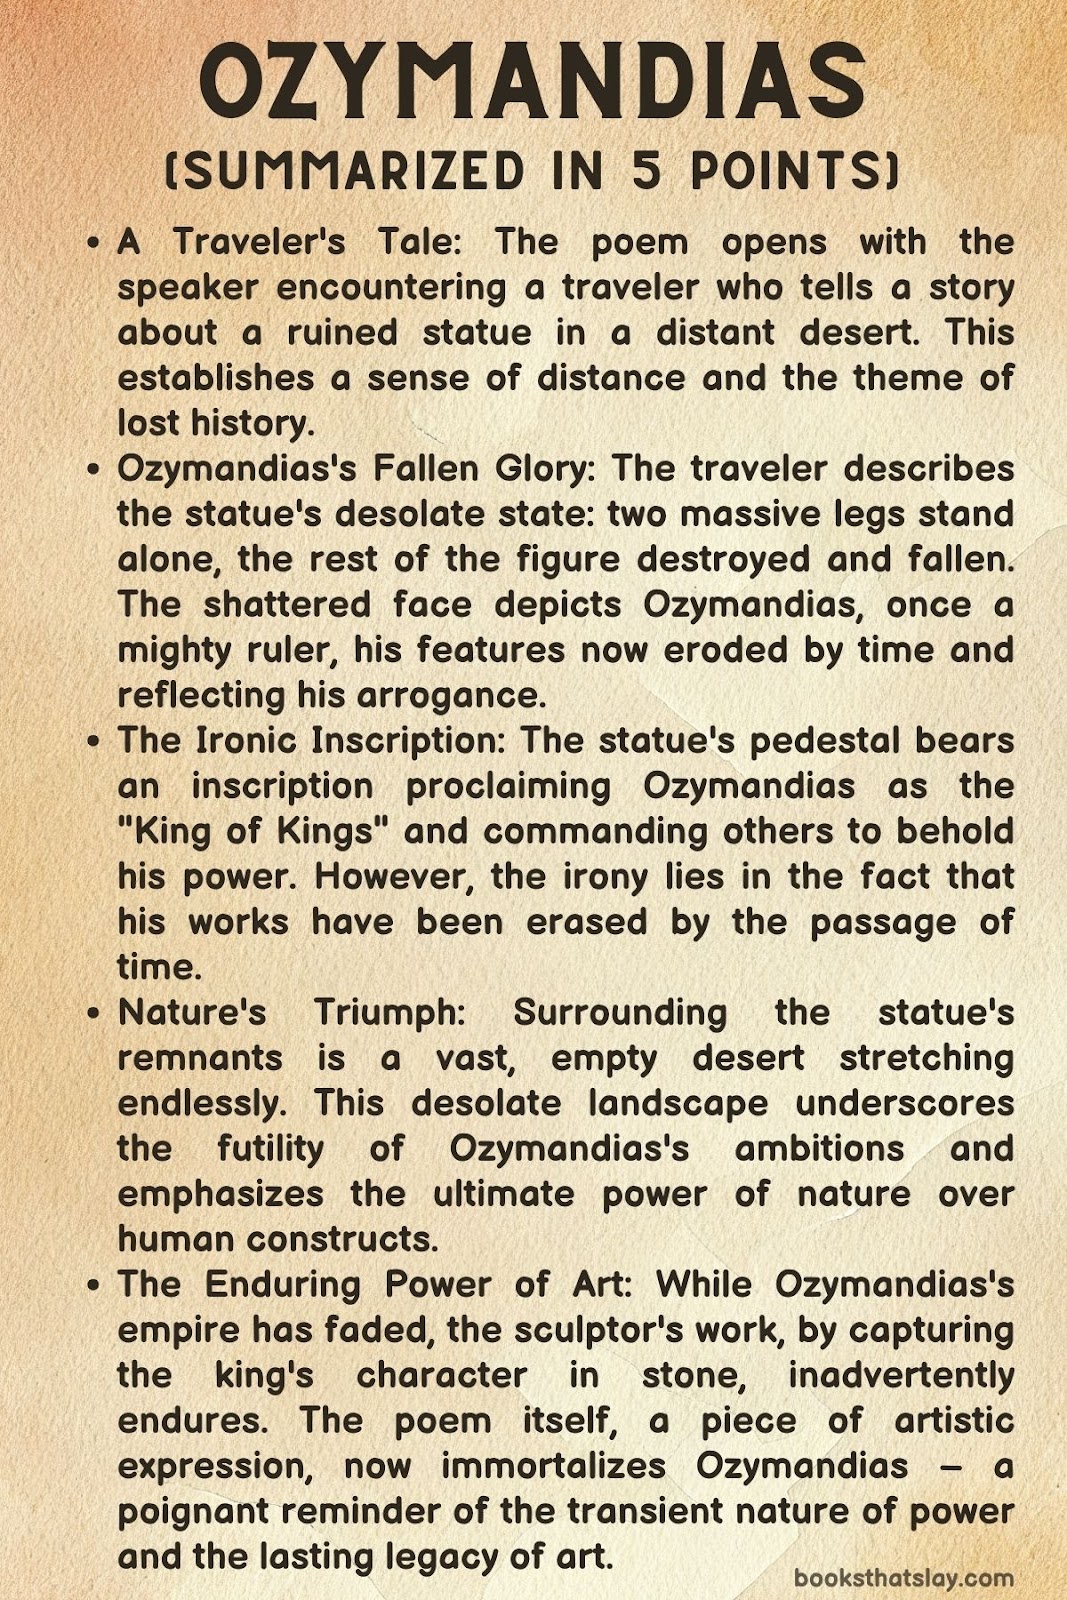 Ozymandias Summary, Analysis and Themes